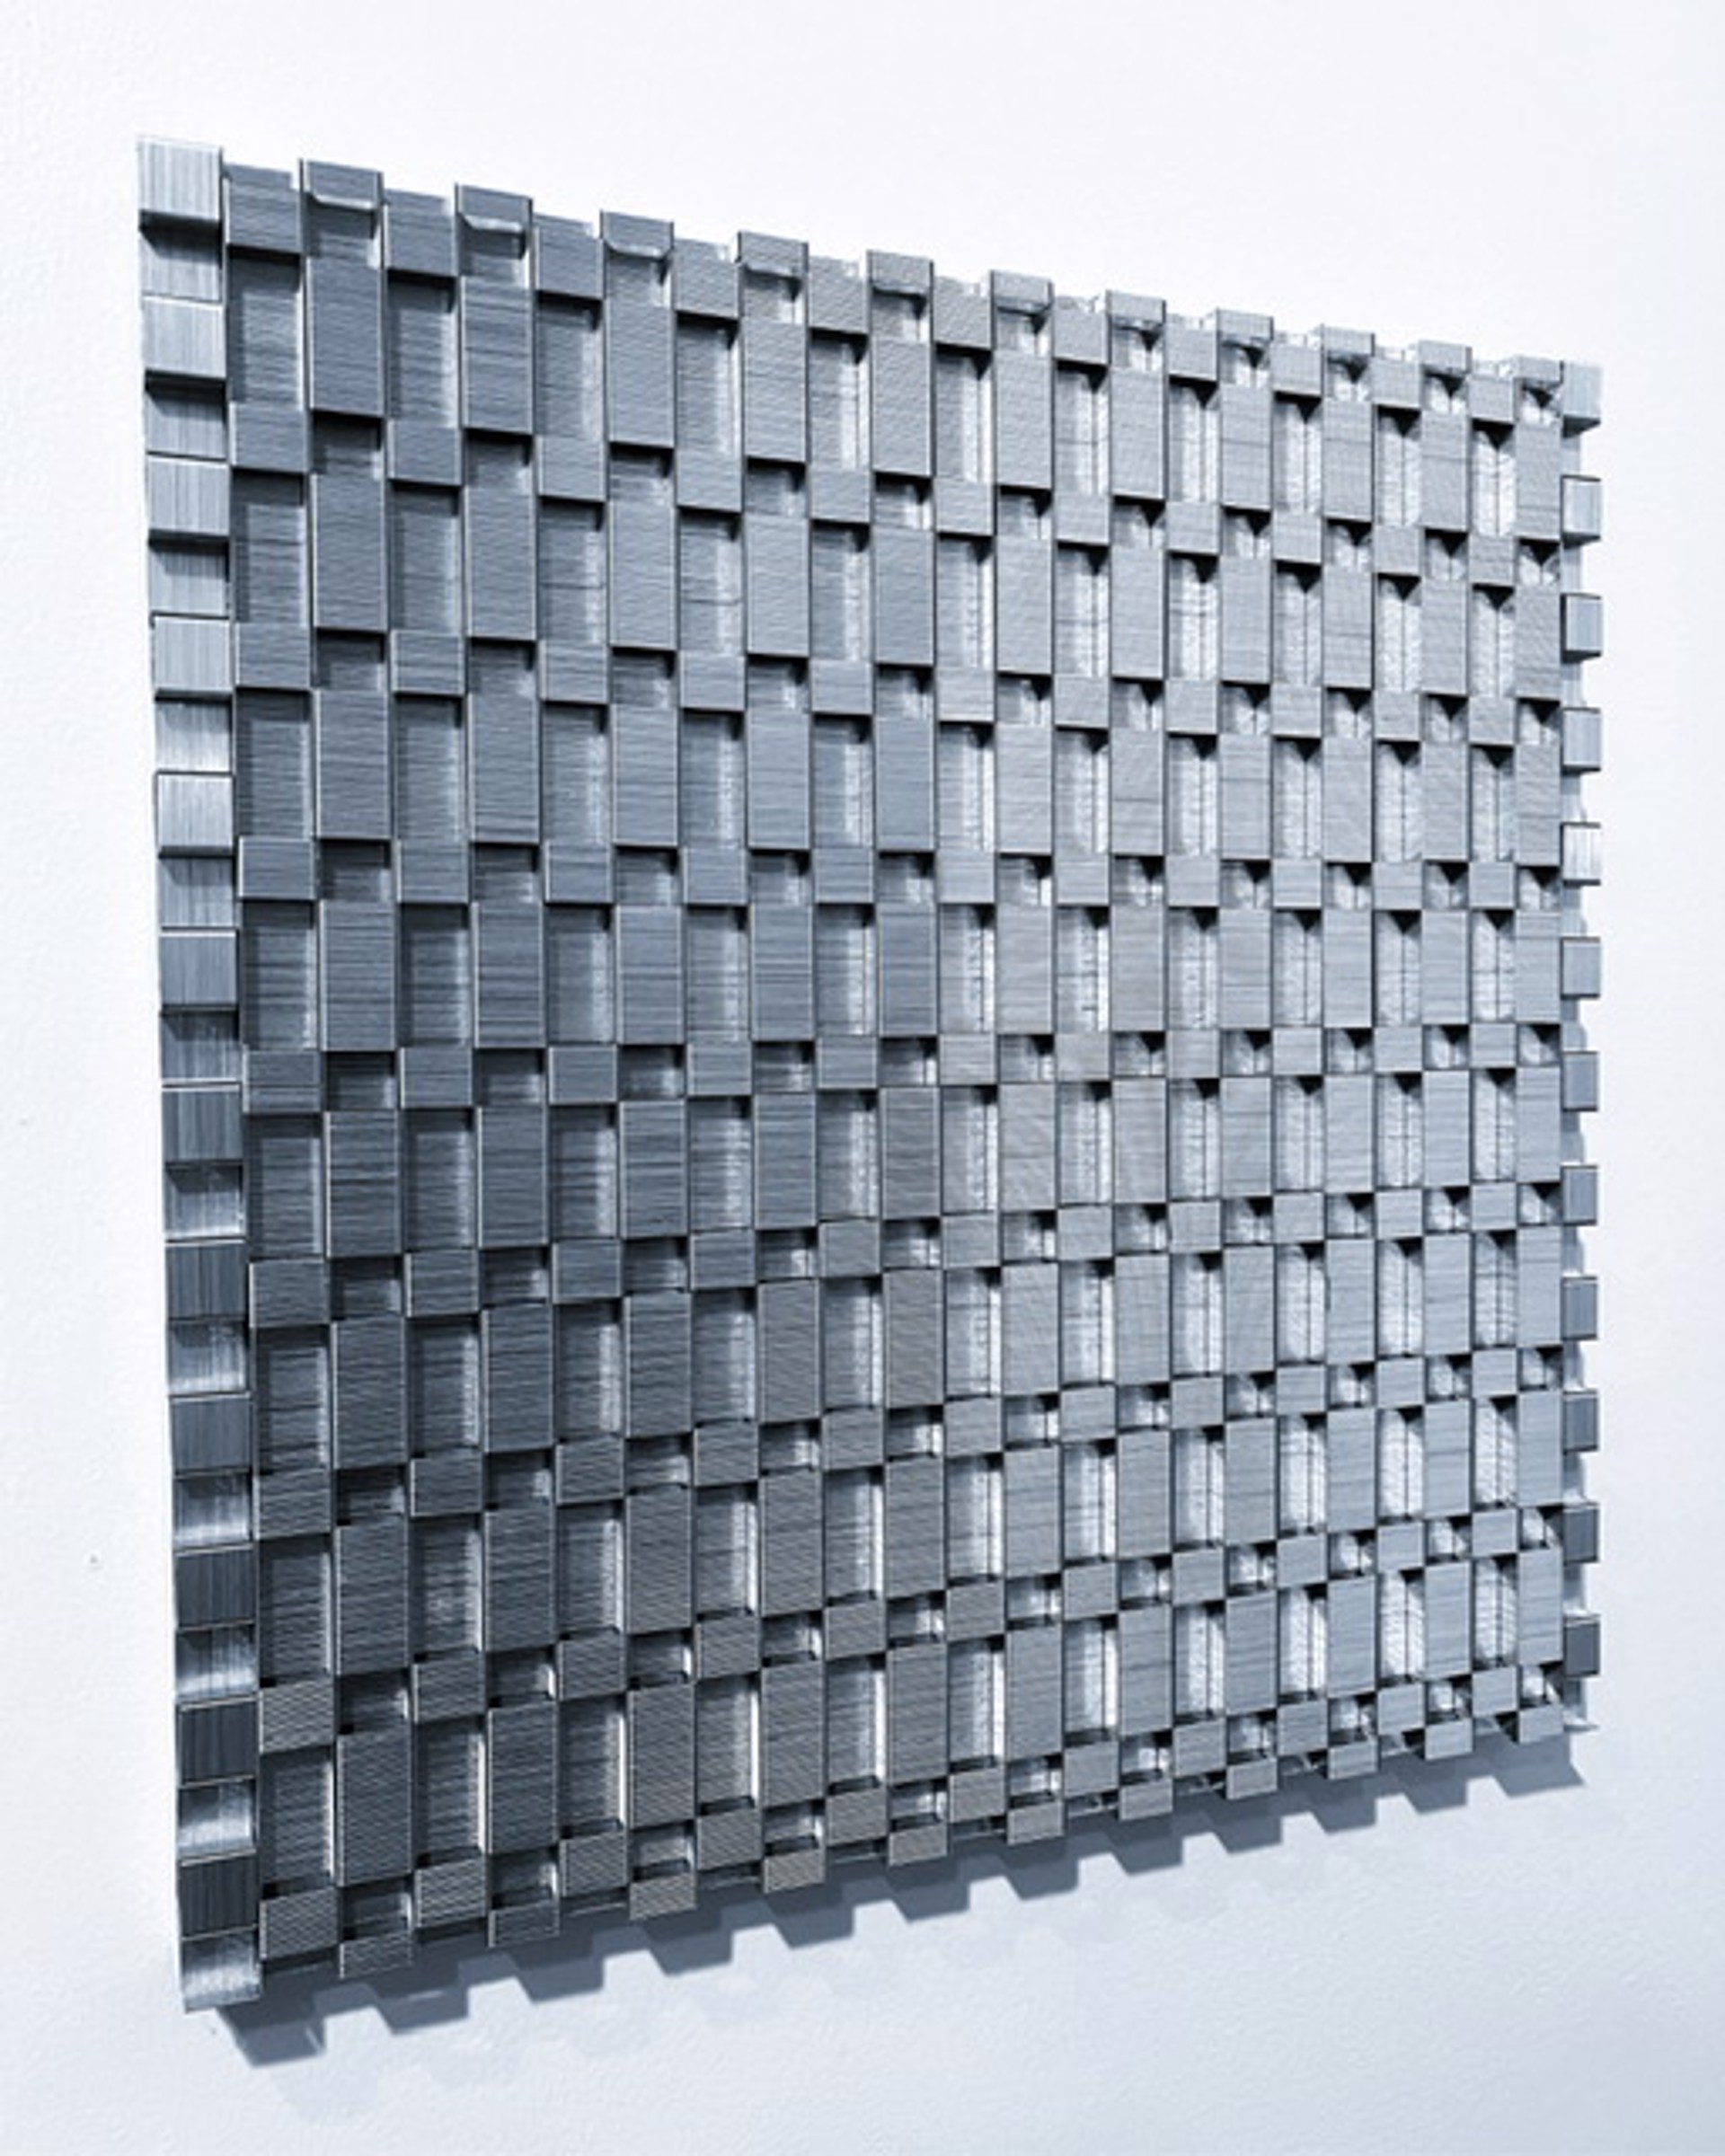 Checkerboard Variation 12x12 No. 1 by Evan Stoler